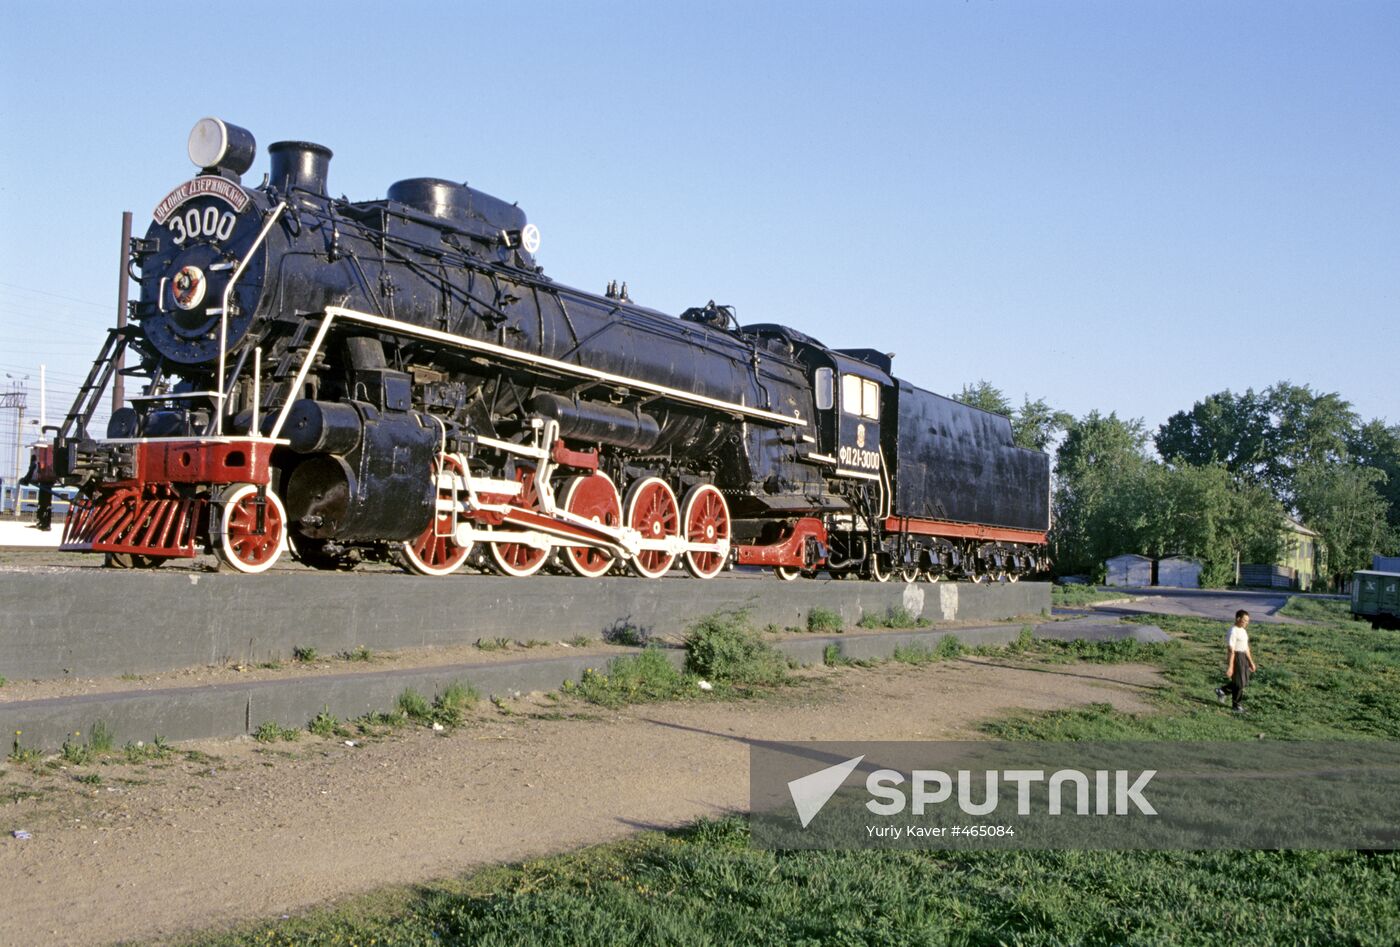 A Felix Dzerzhinsky steam locomotive